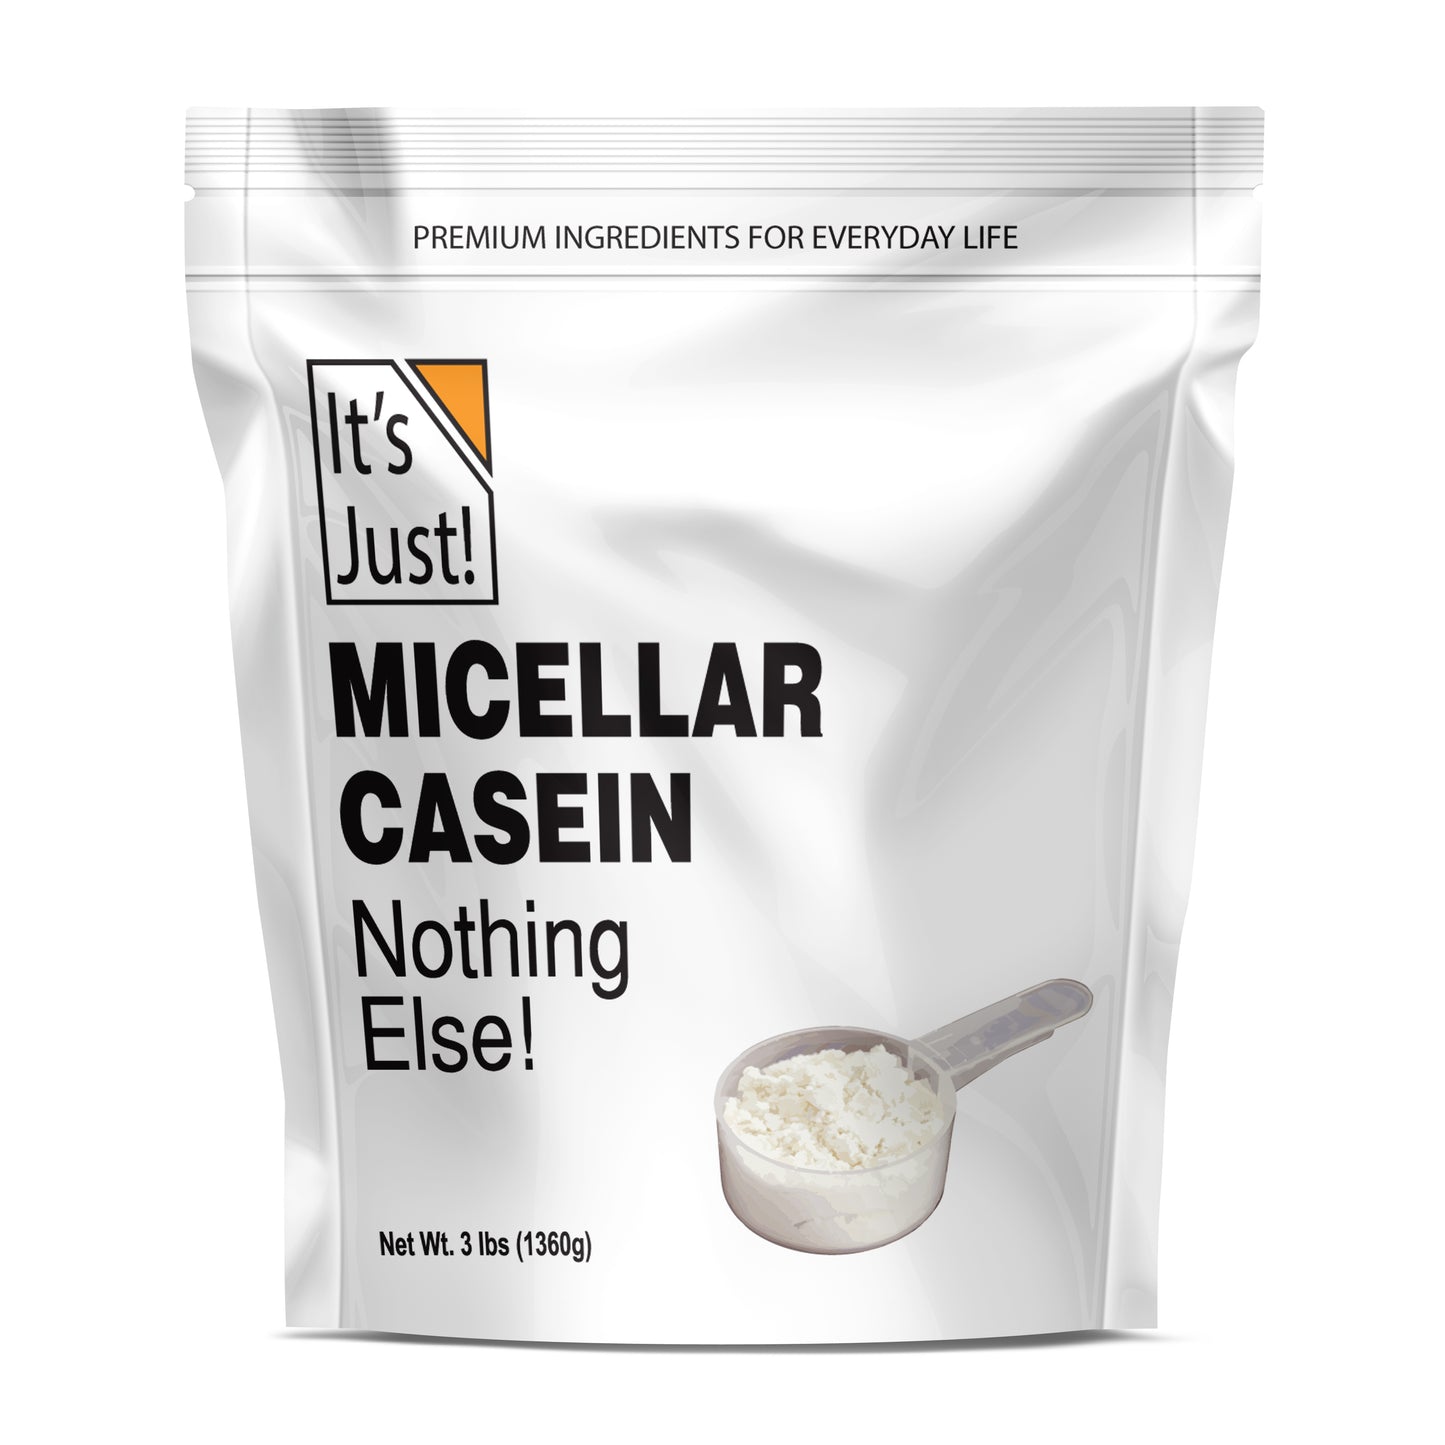 It's Just! - Micellar Casein Protein